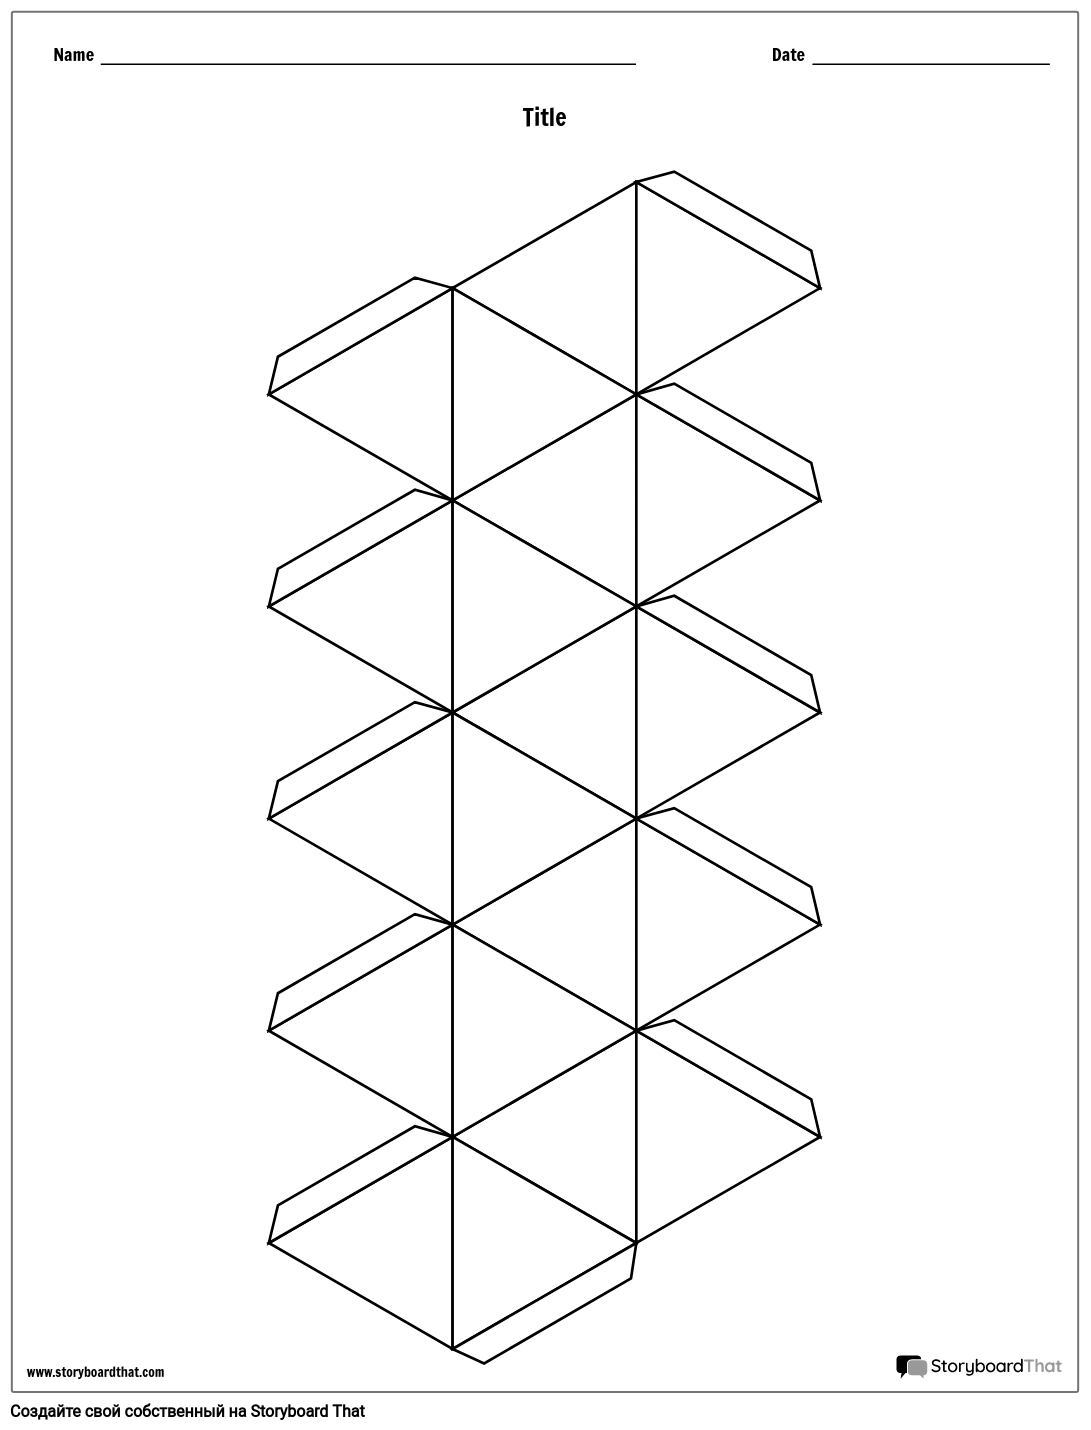 20-сторонний Сюжетный куб